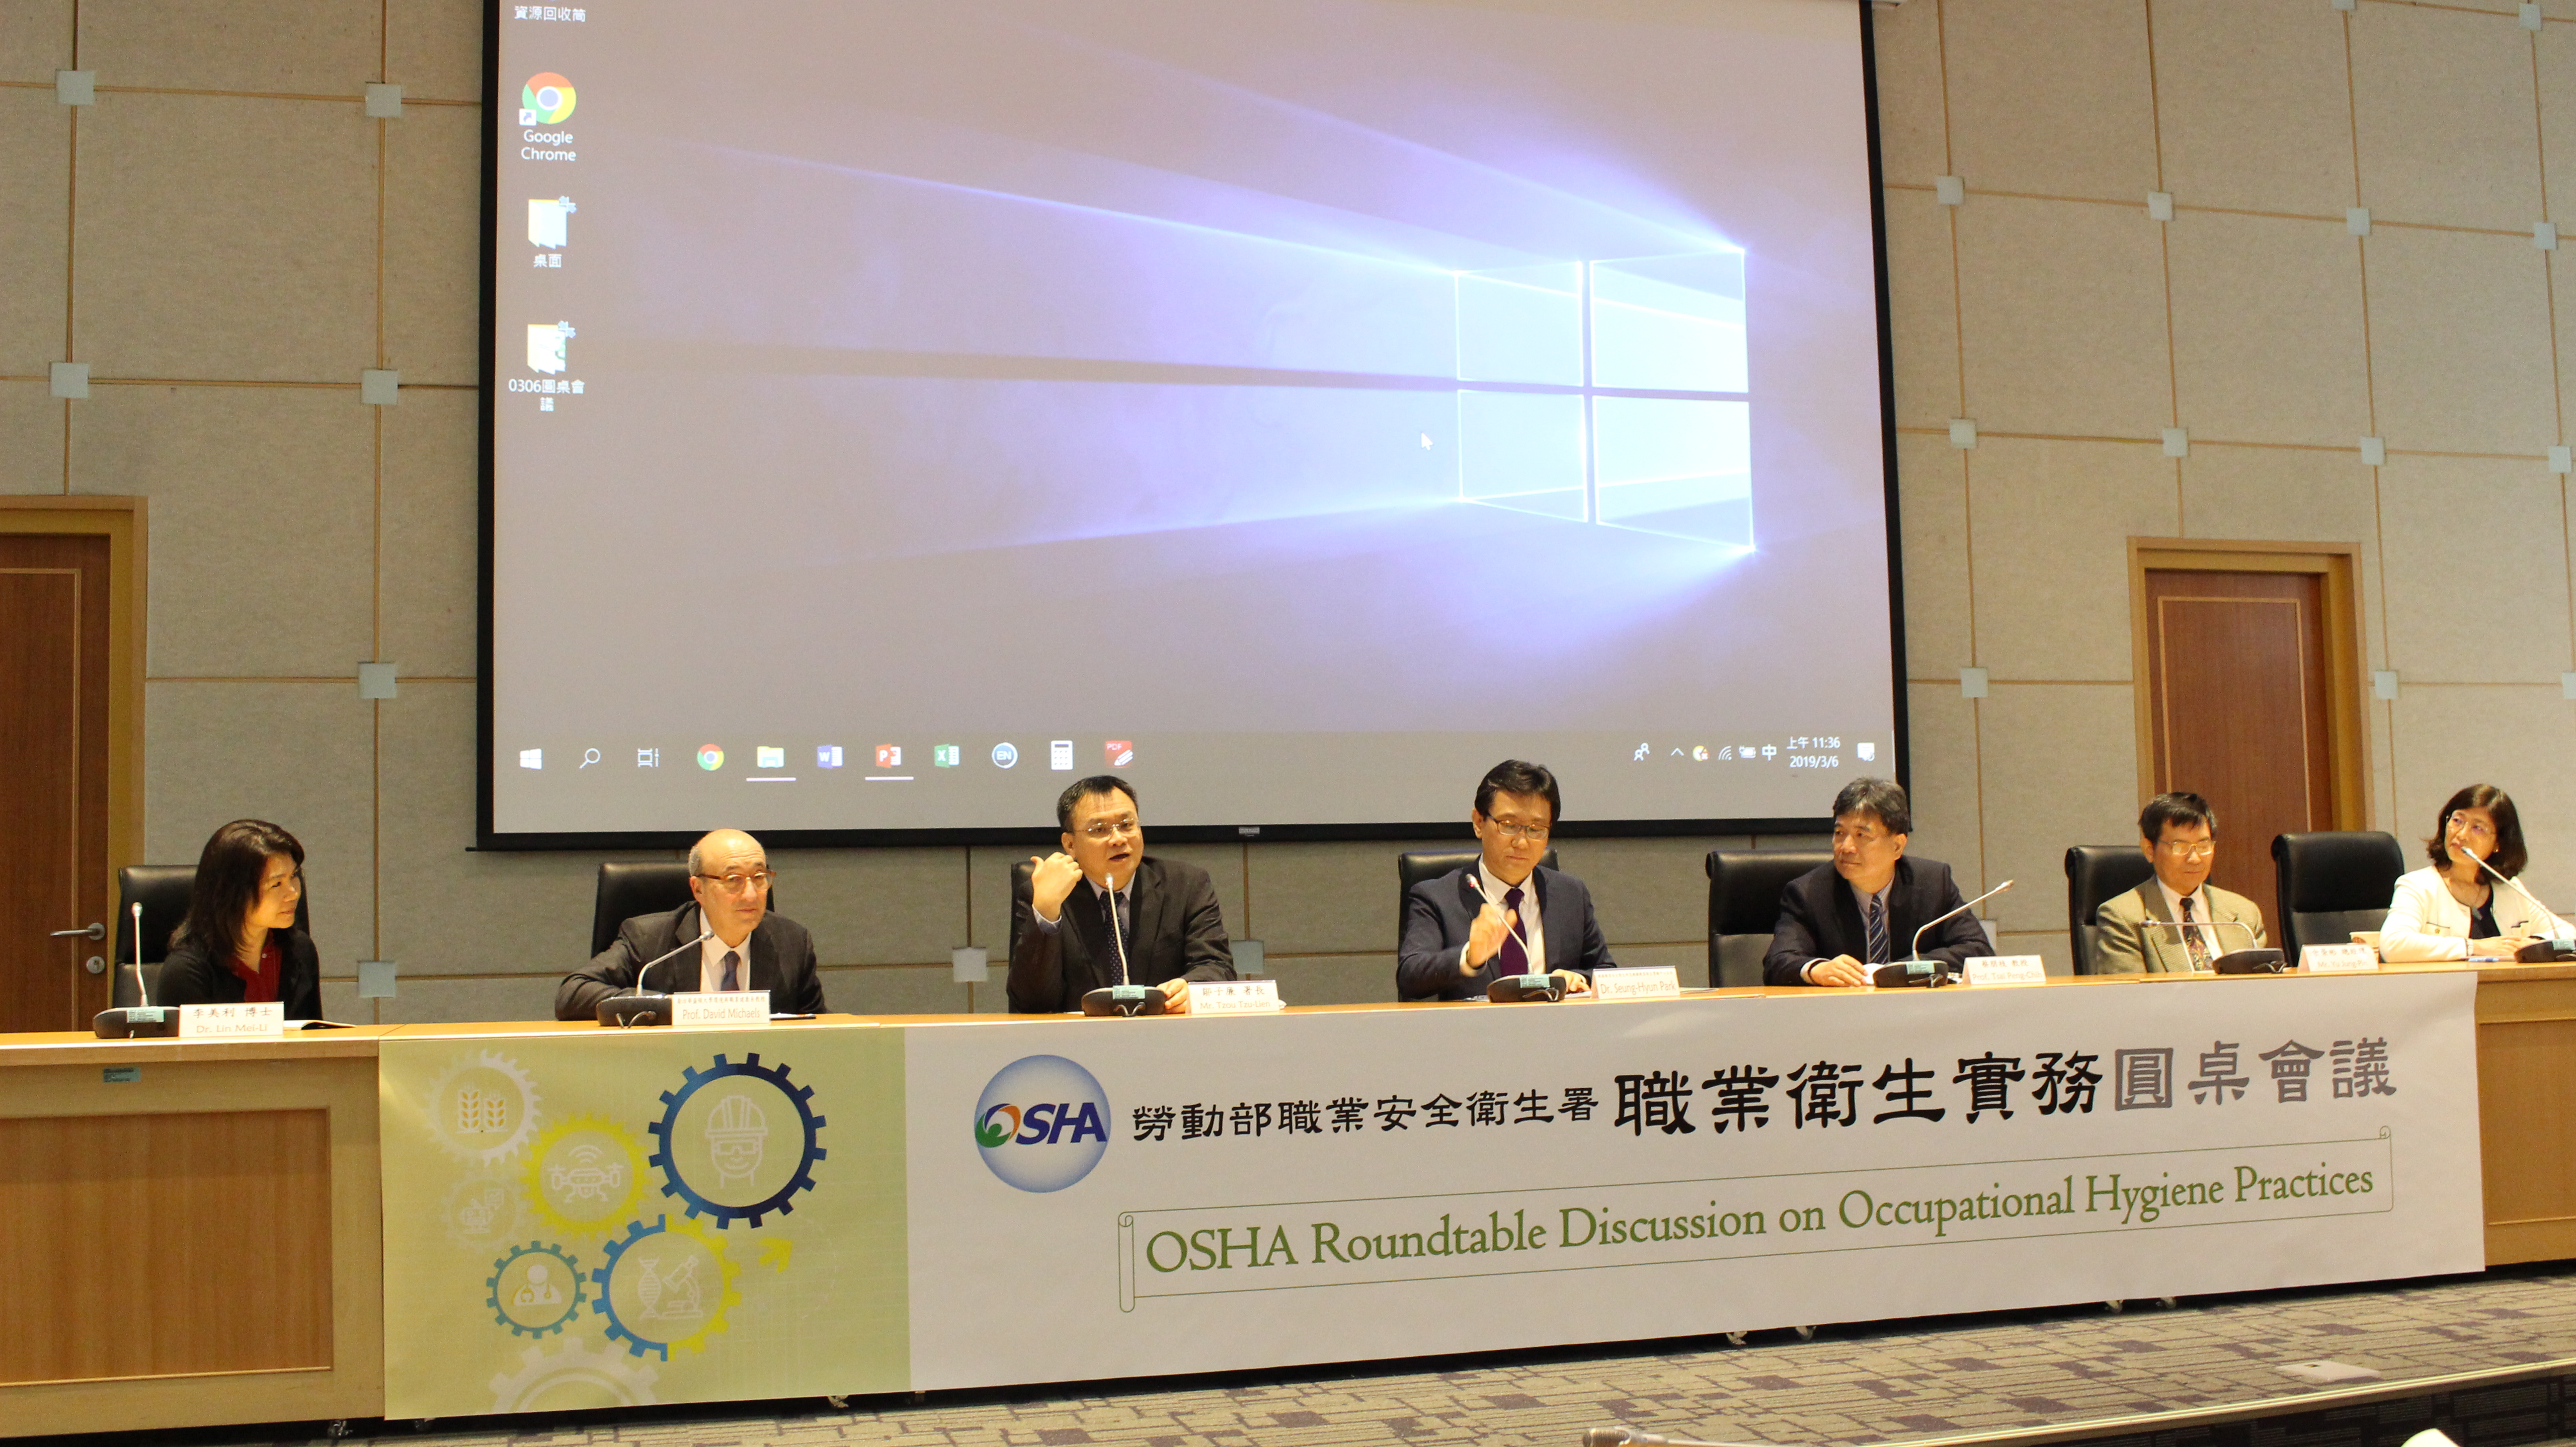 左至右：Dr. Lin(美)、Prof. David Michaels(美)、鄒子廉署長、Dr. Park(韓)、蔡朋枝教授、余榮彬總經理、陳美蓮理事長.JPG